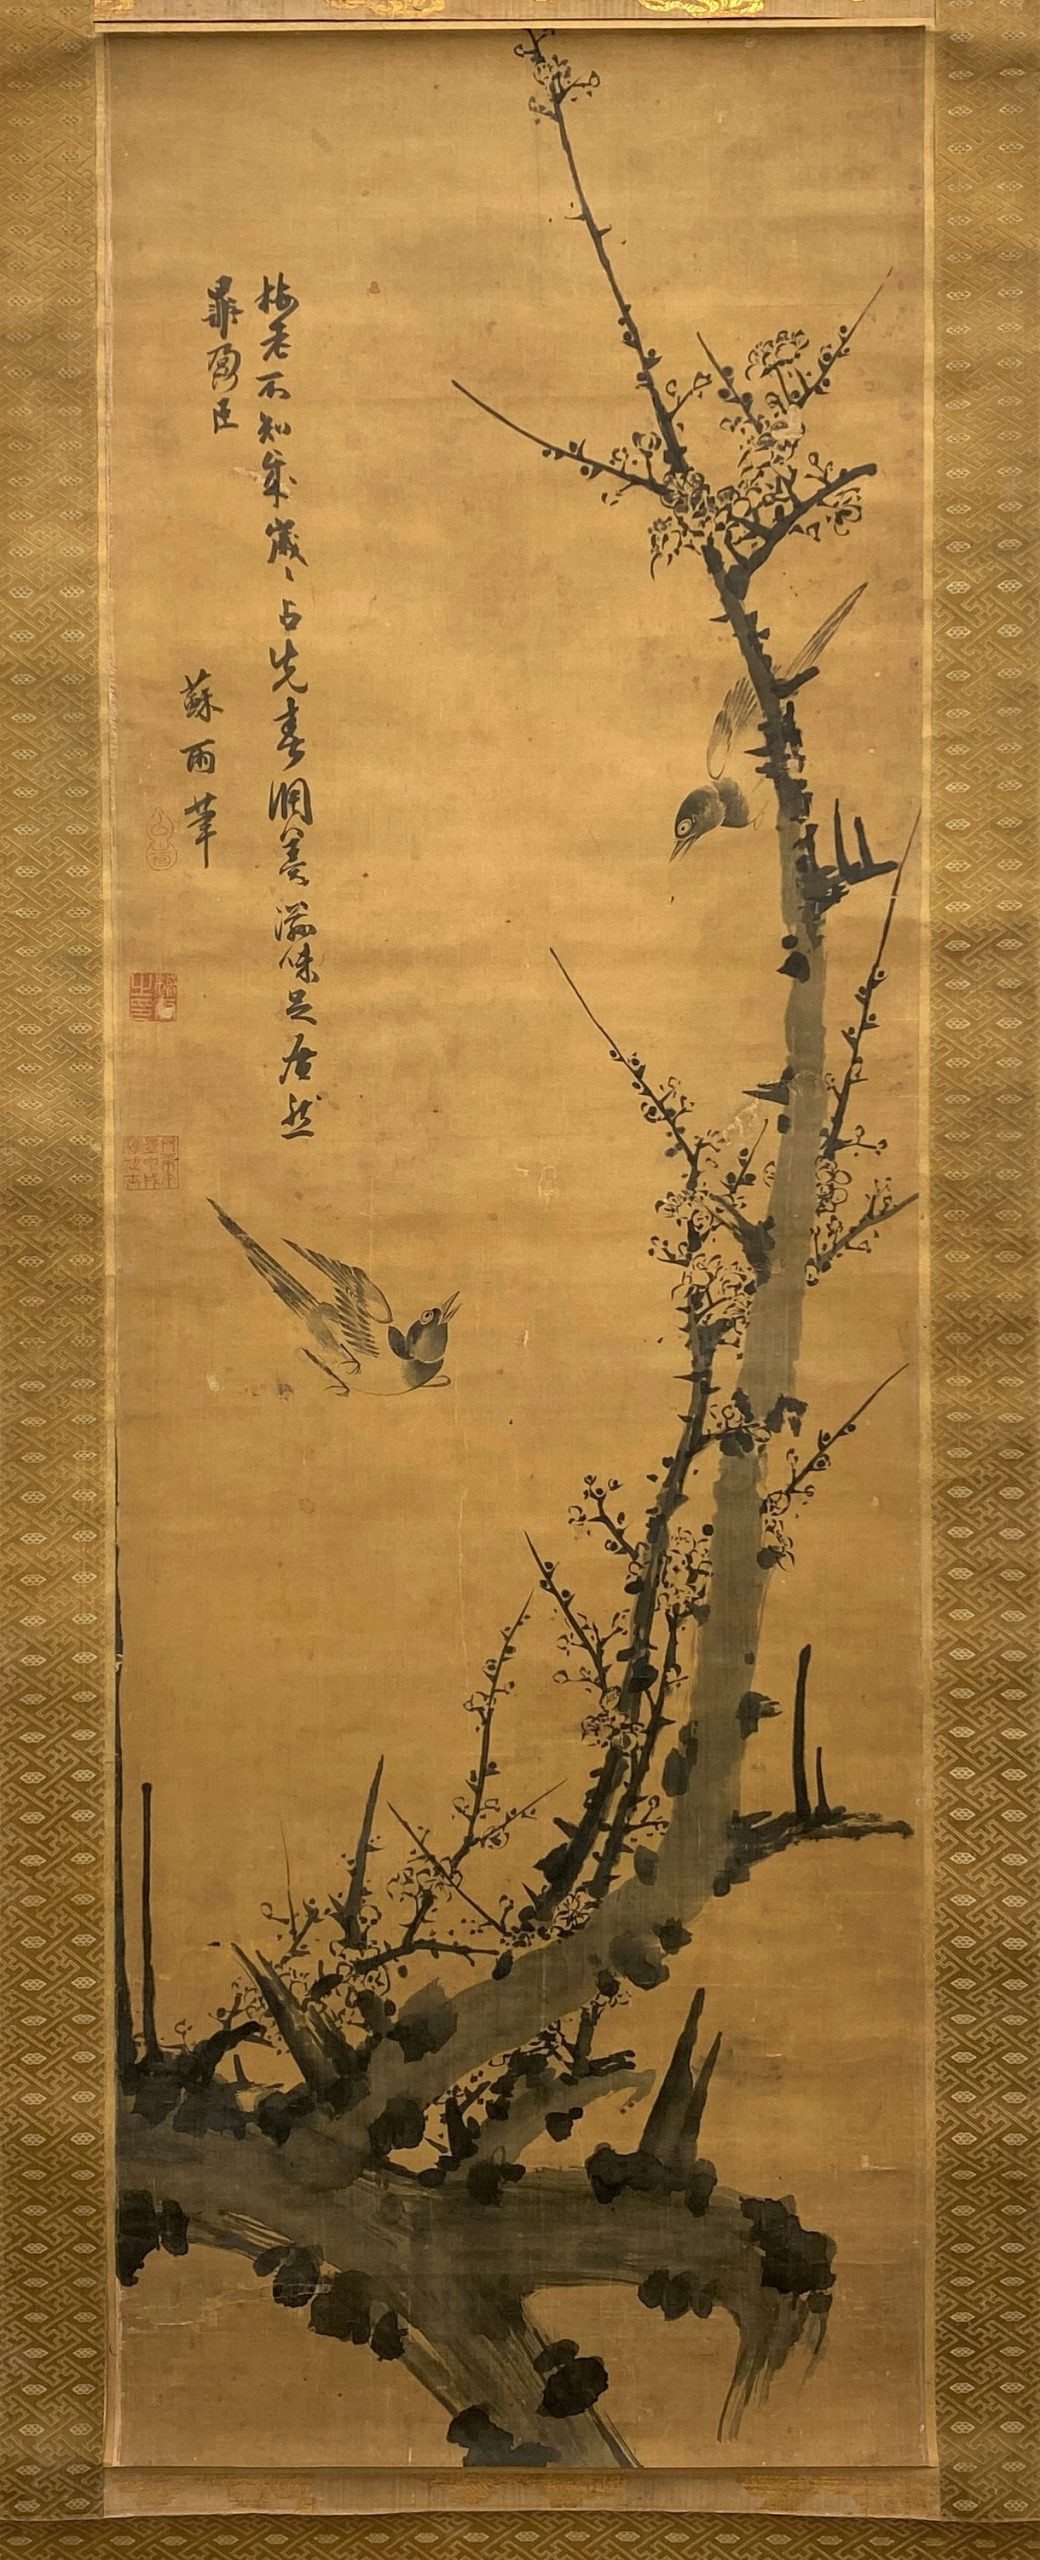 23636	「蘇雨」画 古画 梅花鳥図 軸 二重箱	124×41.5㎝